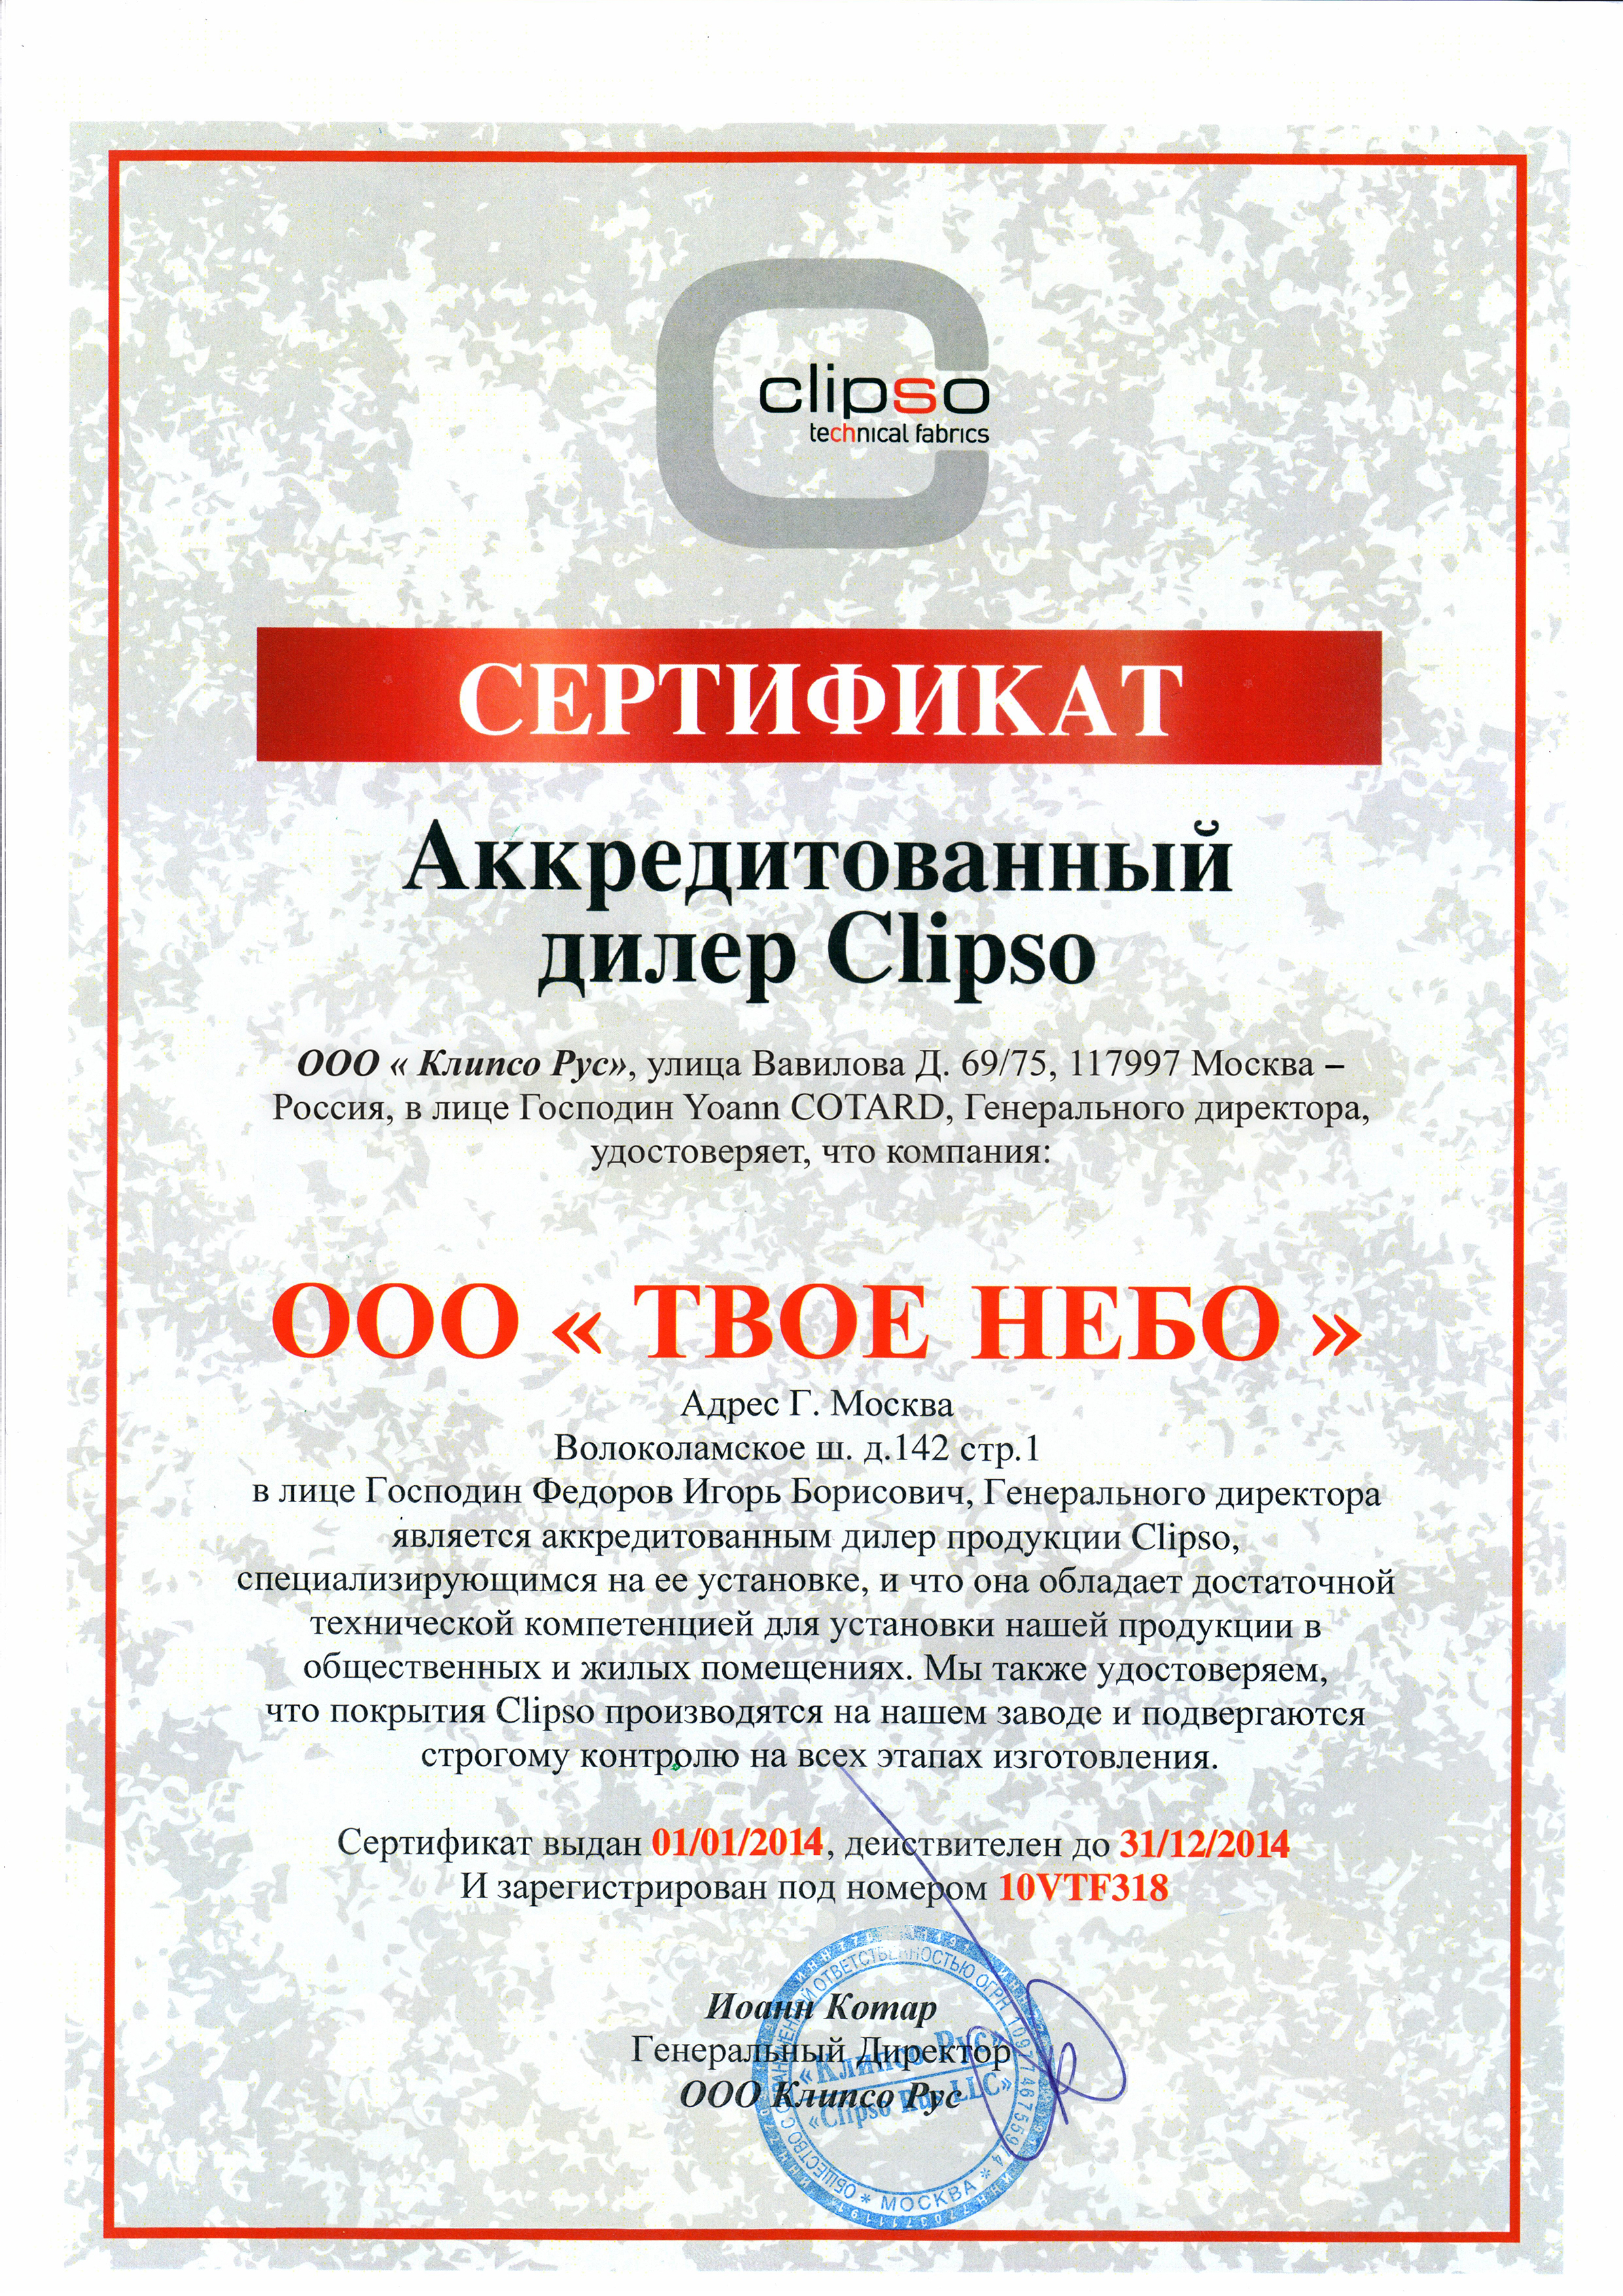 Сертификат Clipso твое небо питер